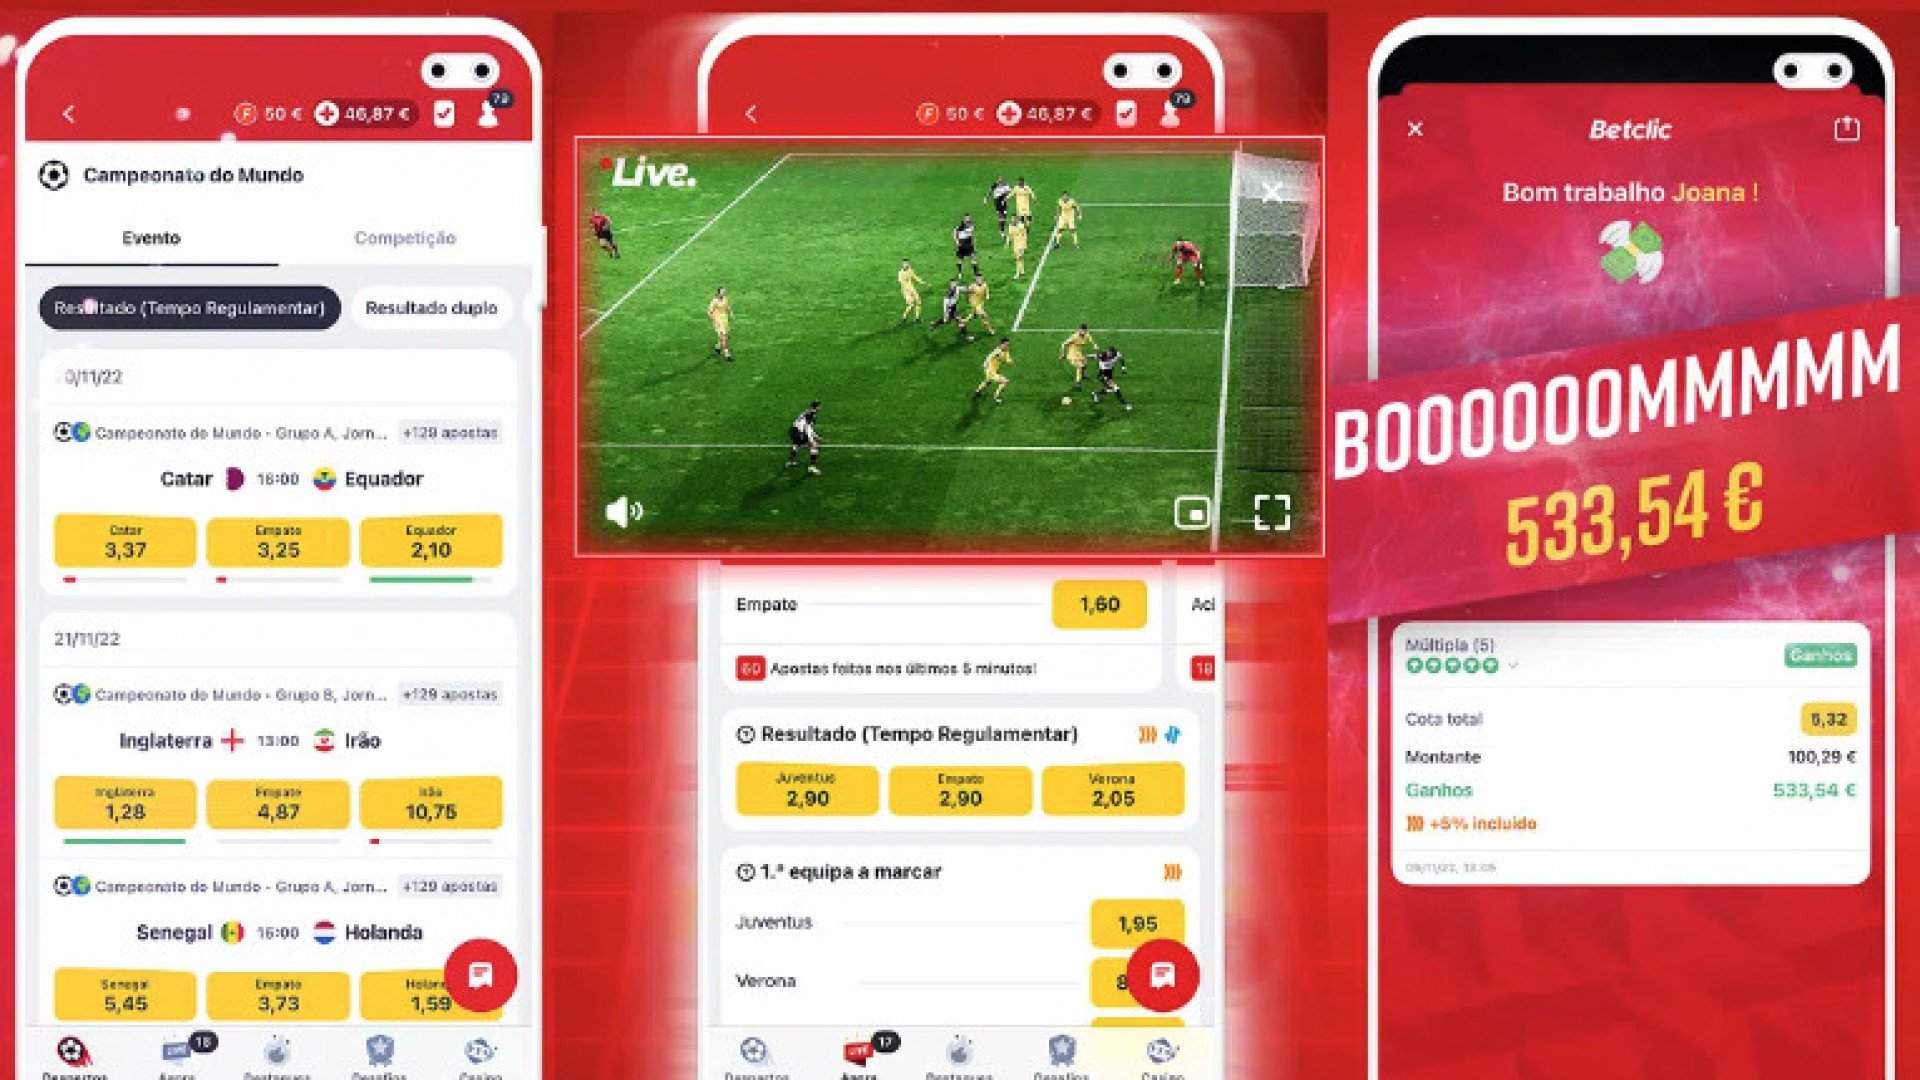 Imagem com verso mobile da Betclic e transmisso ao vivo de futebol em tela separada.